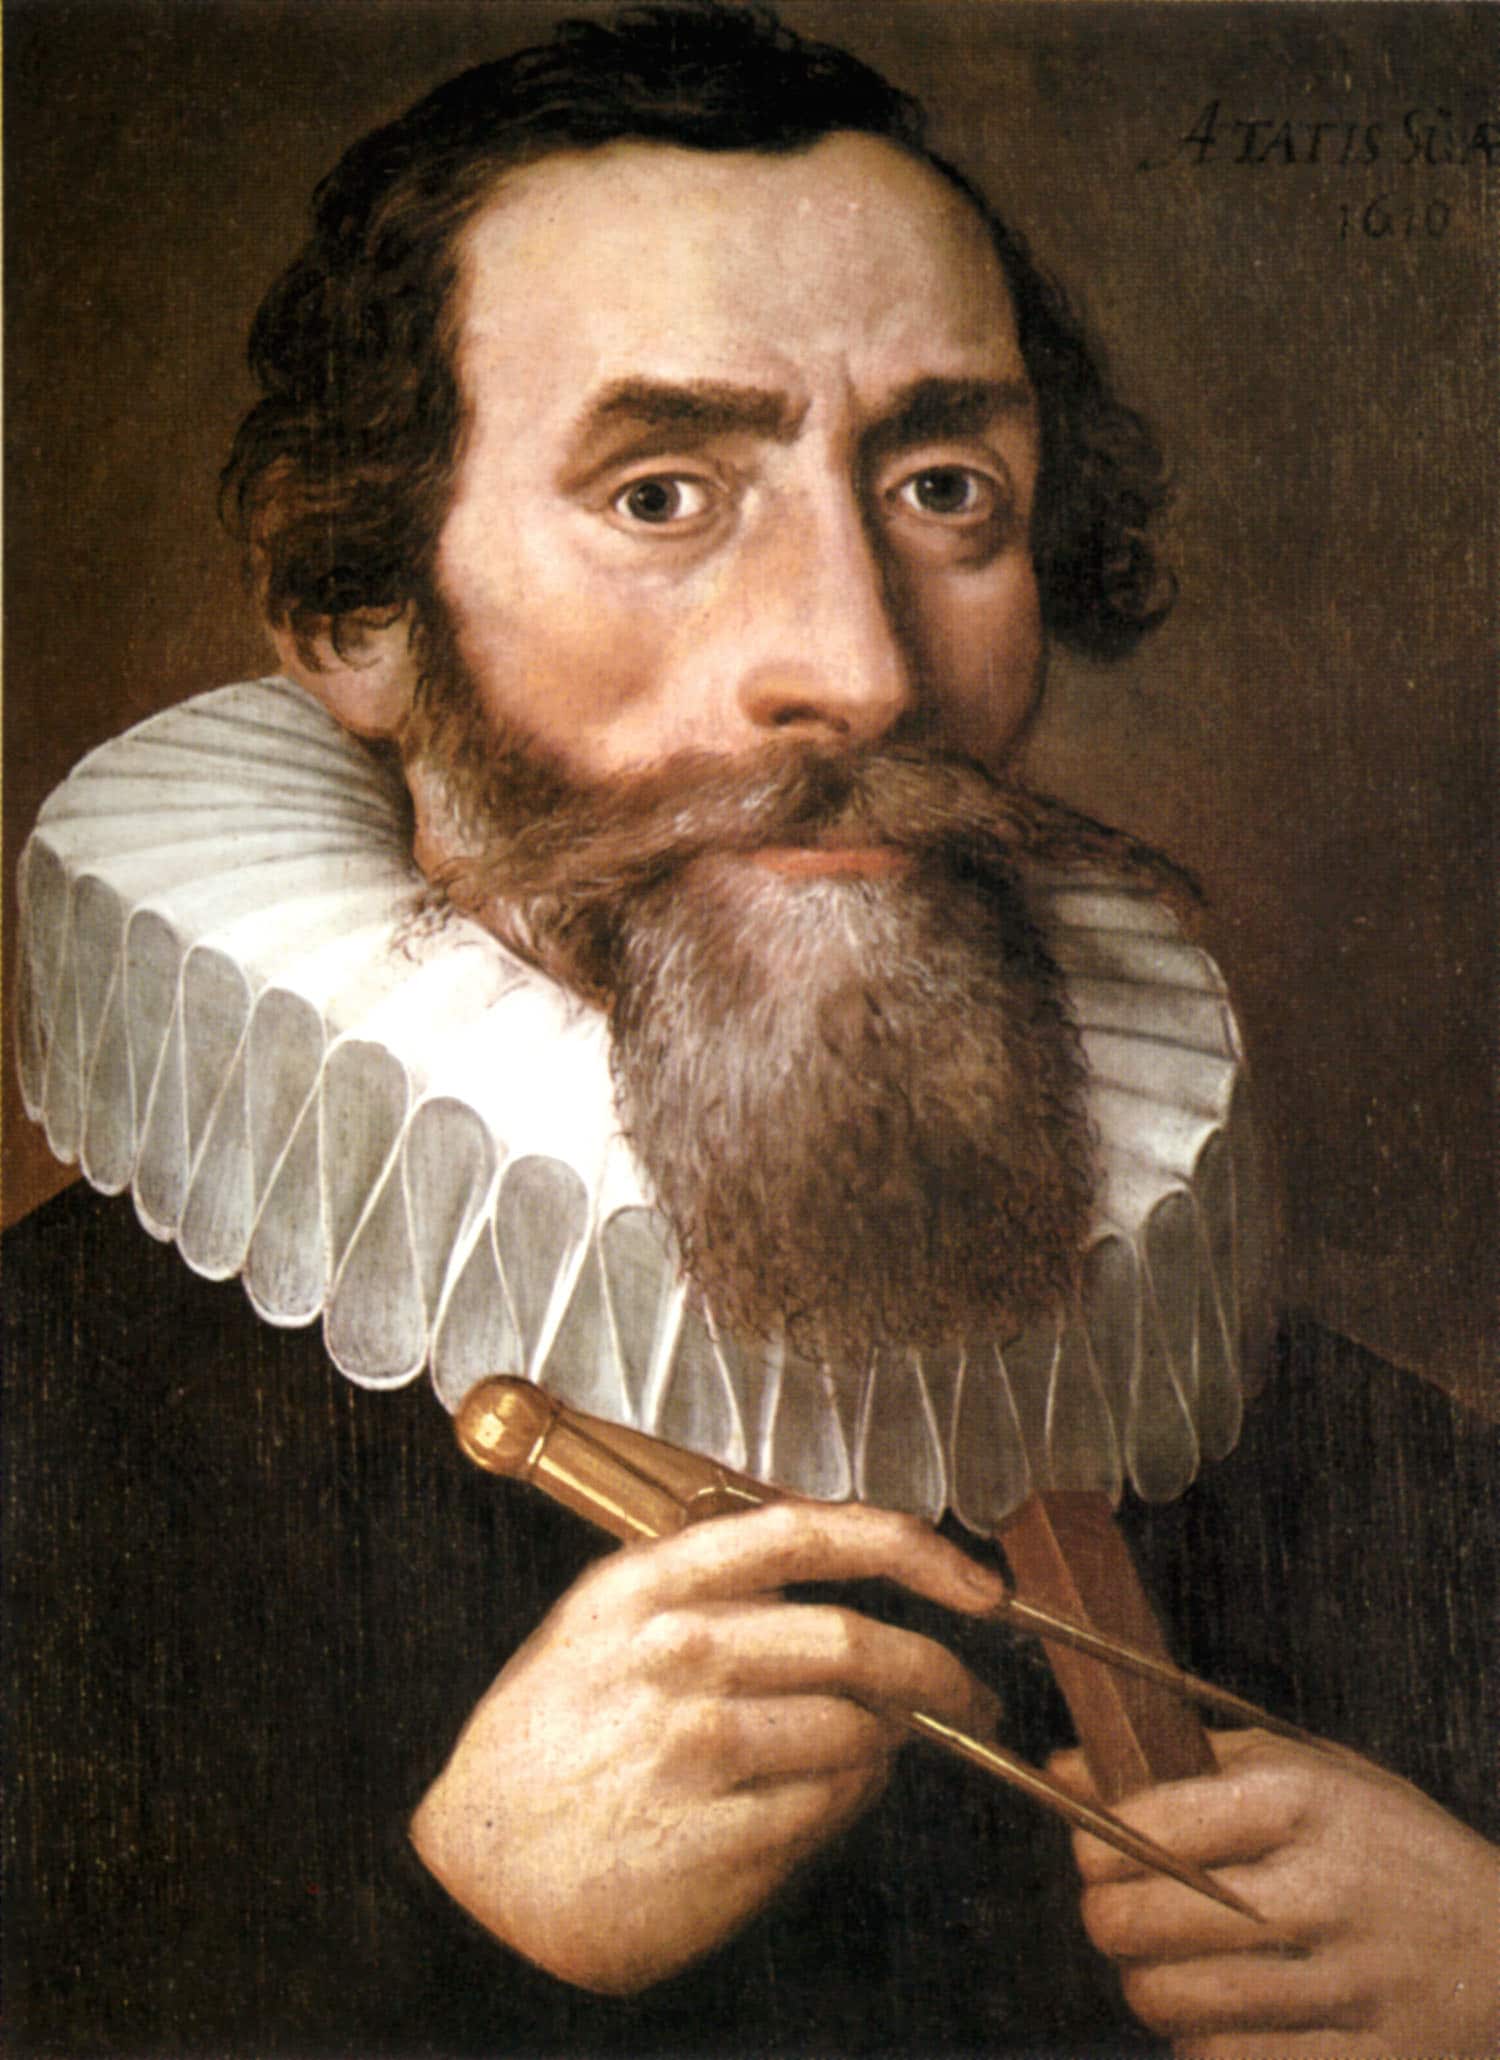 Johannes Kepler: Vida y descubrimientos astronómicos